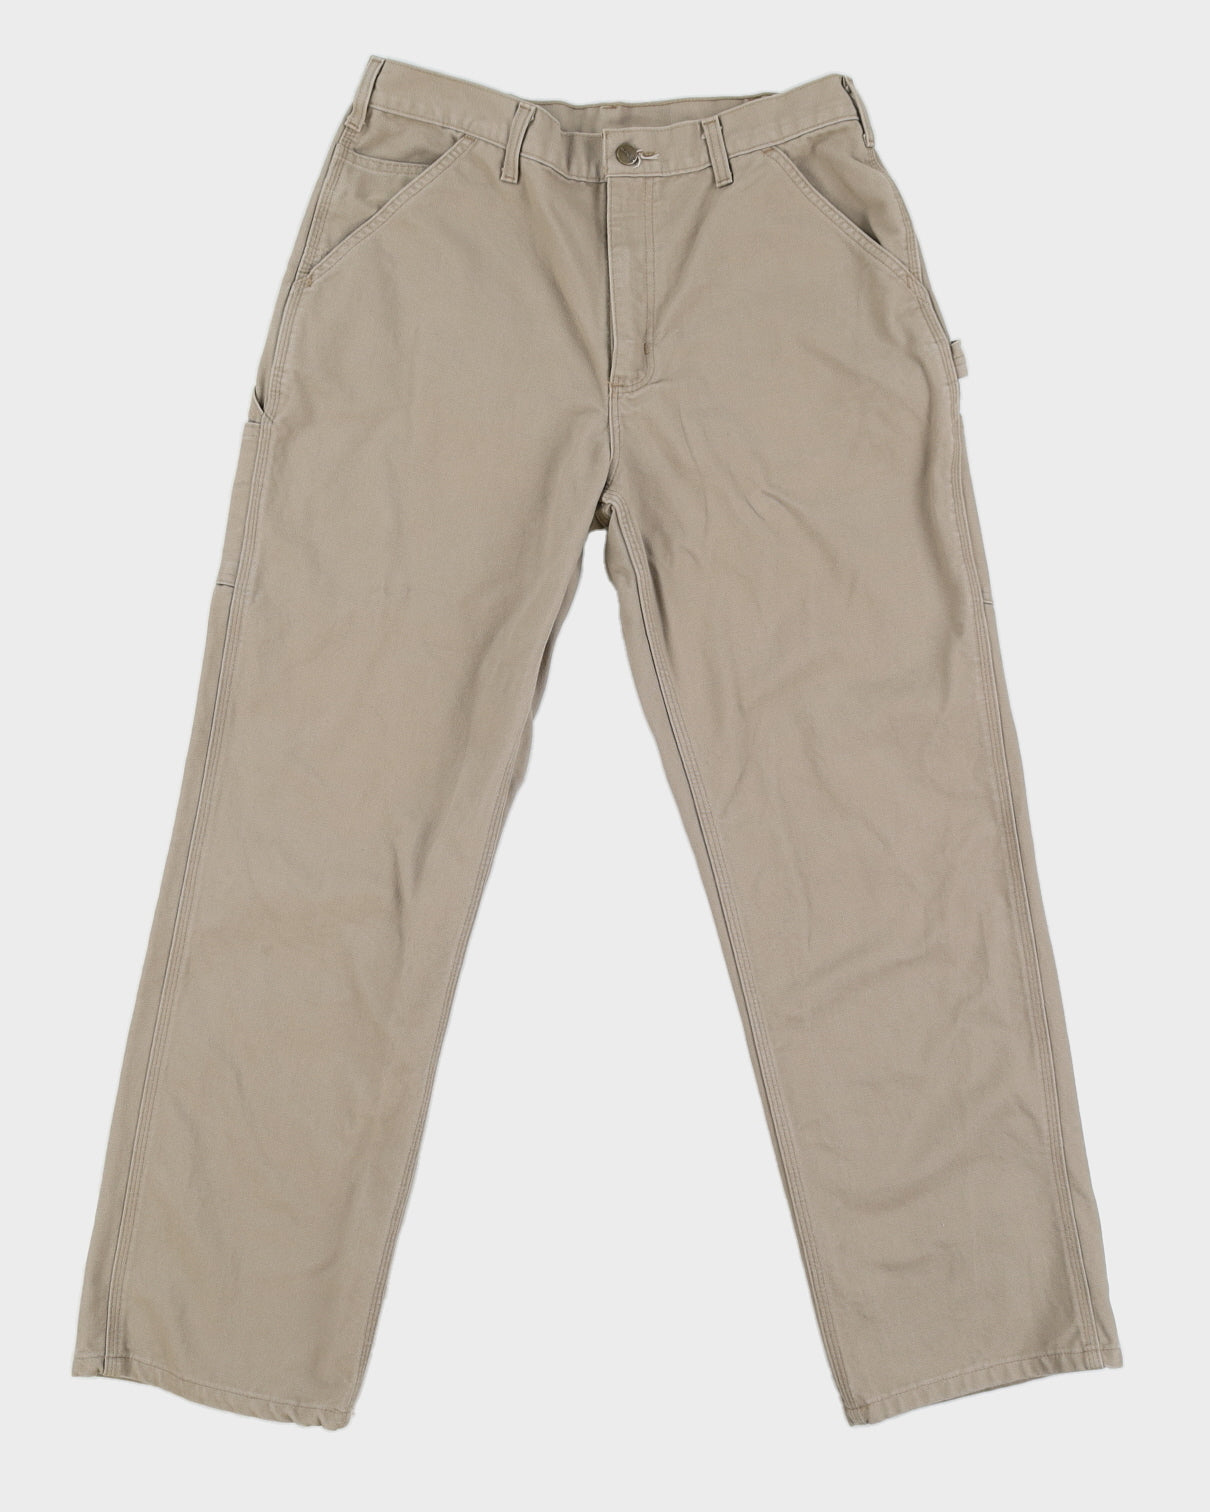 00s Carhartt Beige Work Trousers - W34 L31